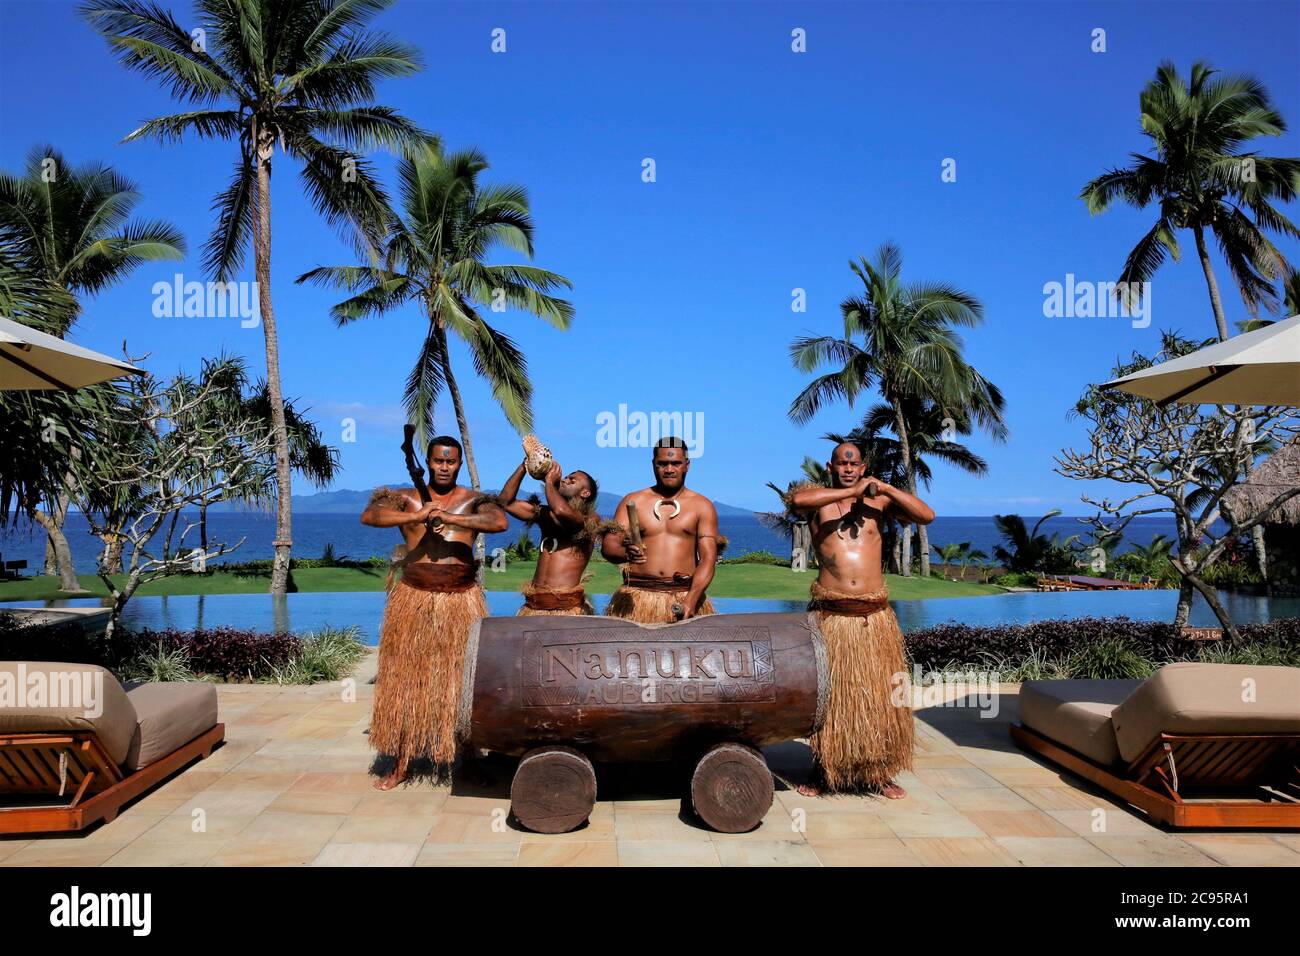 Suva. Juli 2020. Männer in Hula Röcken treten im Nanuku Auberge Resort in Fidschi auf, 21. Juli 2020. Als südpazifischer Inselstaat mit einzigartiger Kultur und natürlicher Schönheit schätzt Fidschi den Beitrag, den chinesische Touristen in den vergangenen Jahren zu seinem Tourismus geleistet haben, und chinesische Touristen sind herzlich willkommen, das tropische Paradies nach der COVID-19 Pandemie zu genießen, sagte der Geschäftsführer eines Fidschi-Resorts. Quelle: Zhang Yongxing/Xinhua/Alamy Live News Stockfoto